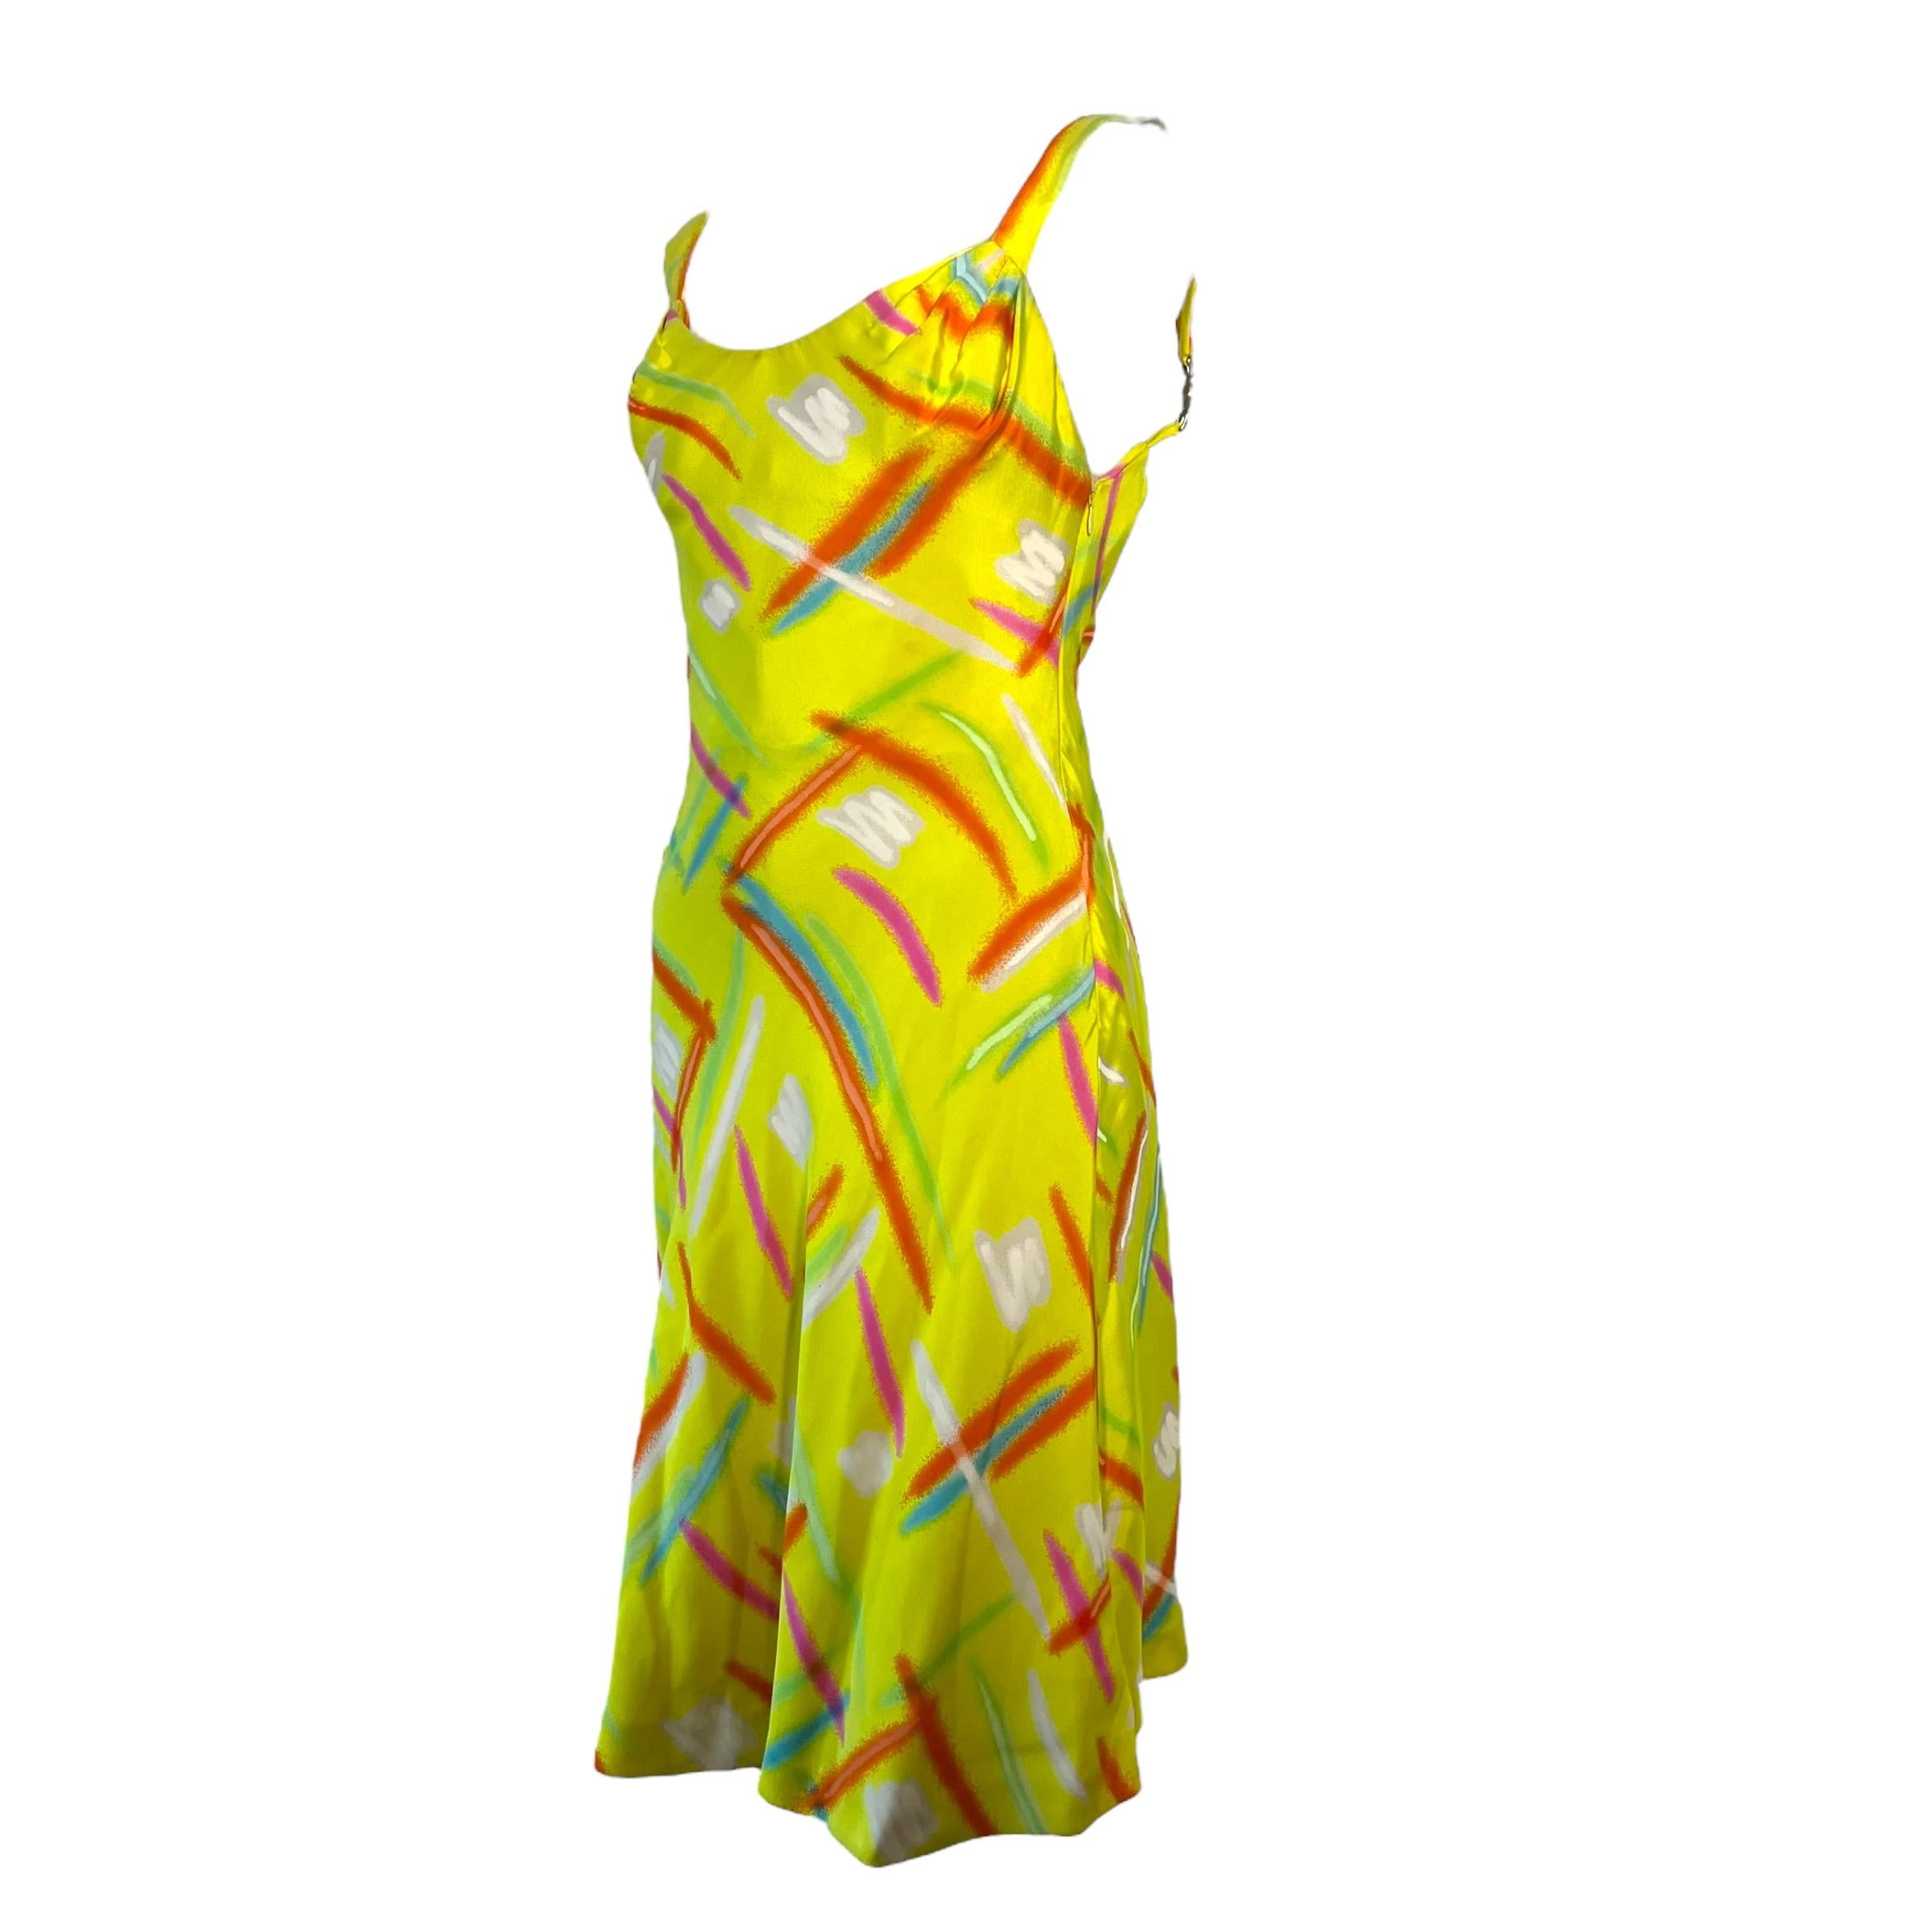 

Kleid aus der Runway Collection von Gianni Versace Dress. Dieses leuchtend gelbe Kleid zeigt überall Neon-Streifen und hat die ikonische Medusa-Hardware an den Trägern.

Größe: IT42, ca. S-M

Zustand: 9/10